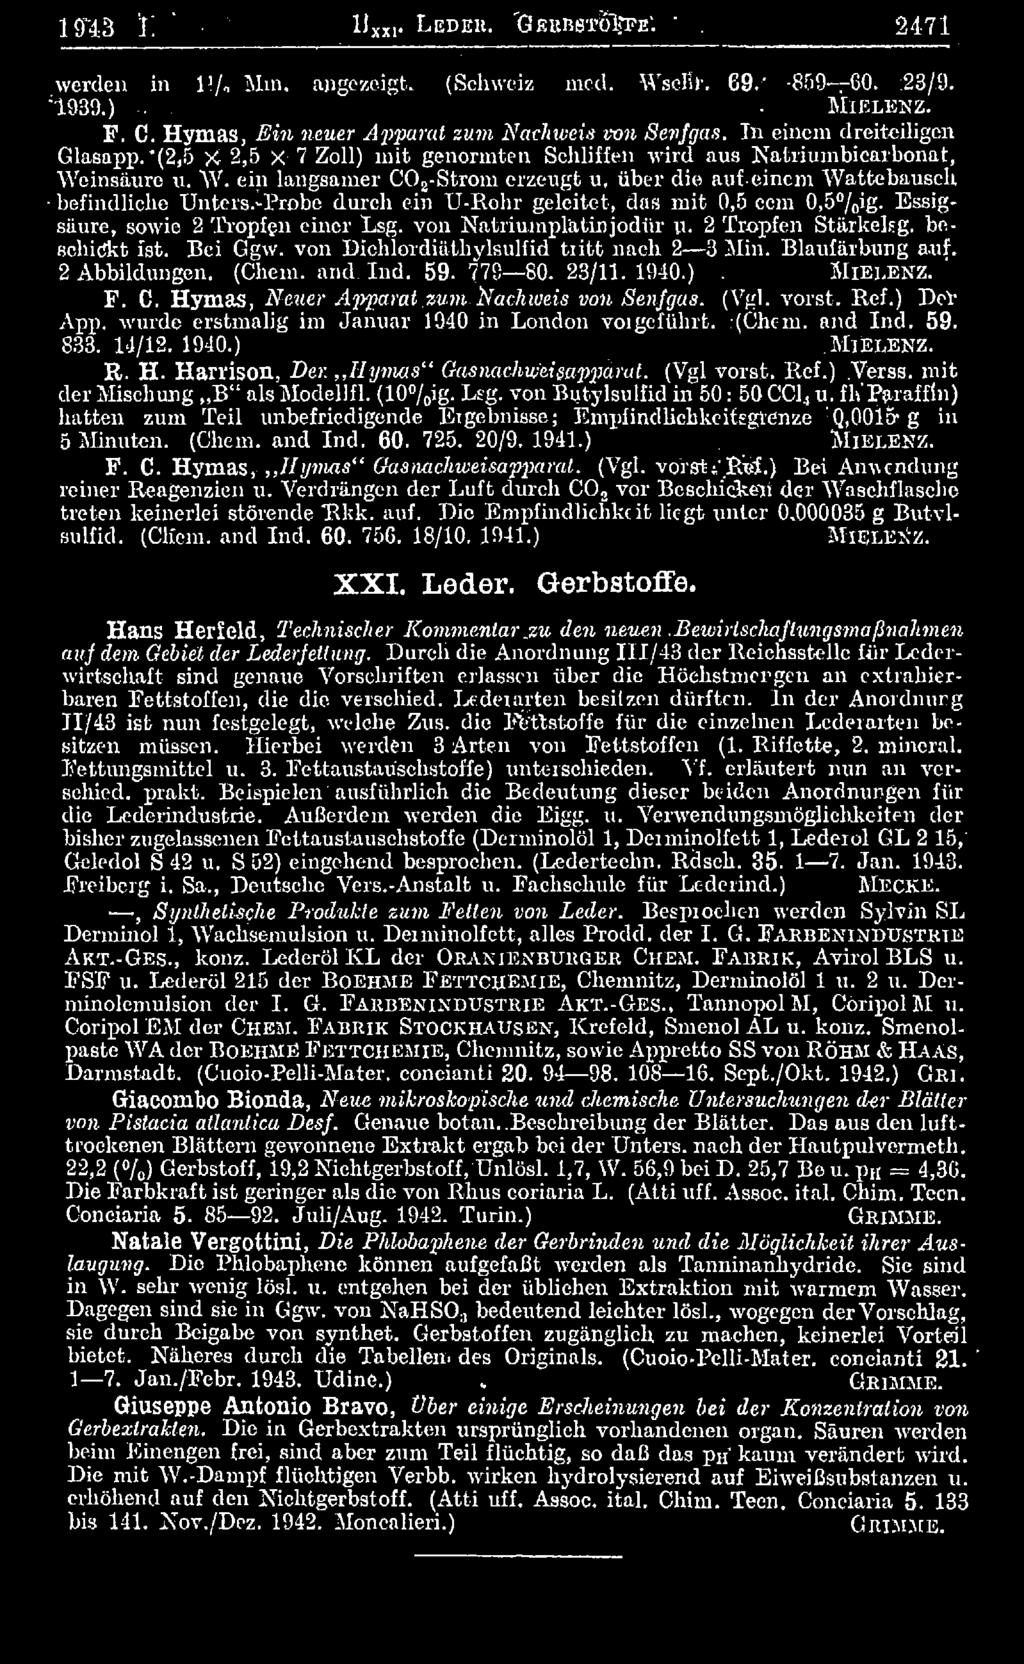 Bei Ggw. von Dichlordiätliylsulfid tritt nach 2 3 Min. Blaufärbung auf. 2 Abbildungen. (Cheni. and. Ind. 59. 779 80. 23/11. 1940.). M ie i,e x z. ' F. C. Hymas, Neuer Apparat'.zum.